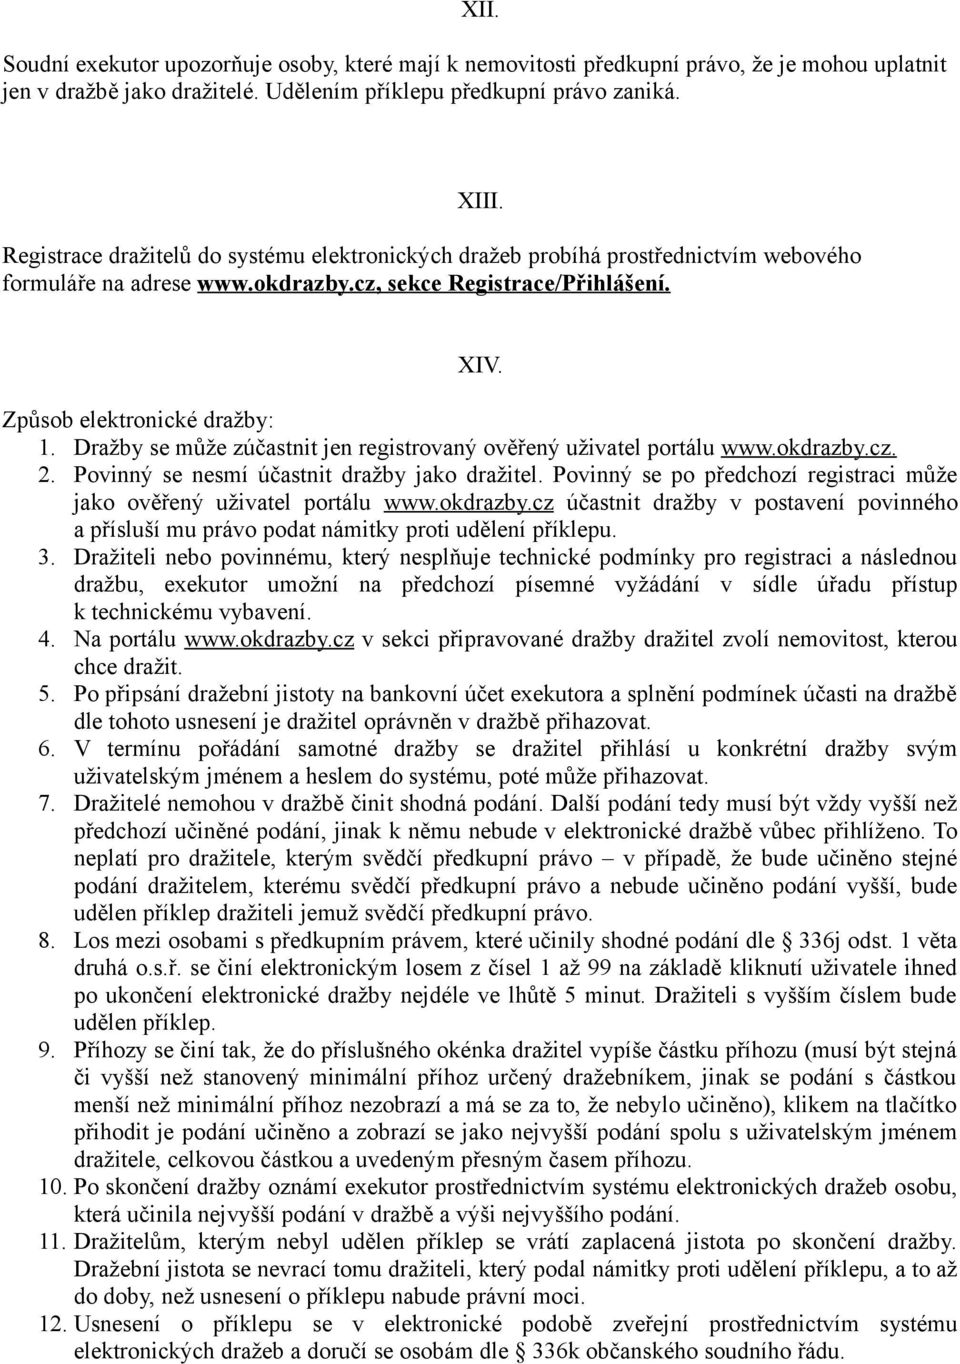 Dražby se může zúčastnit jen registrovaný ověřený uživatel portálu www.okdrazby.cz. 2. Povinný se nesmí účastnit dražby jako dražitel.